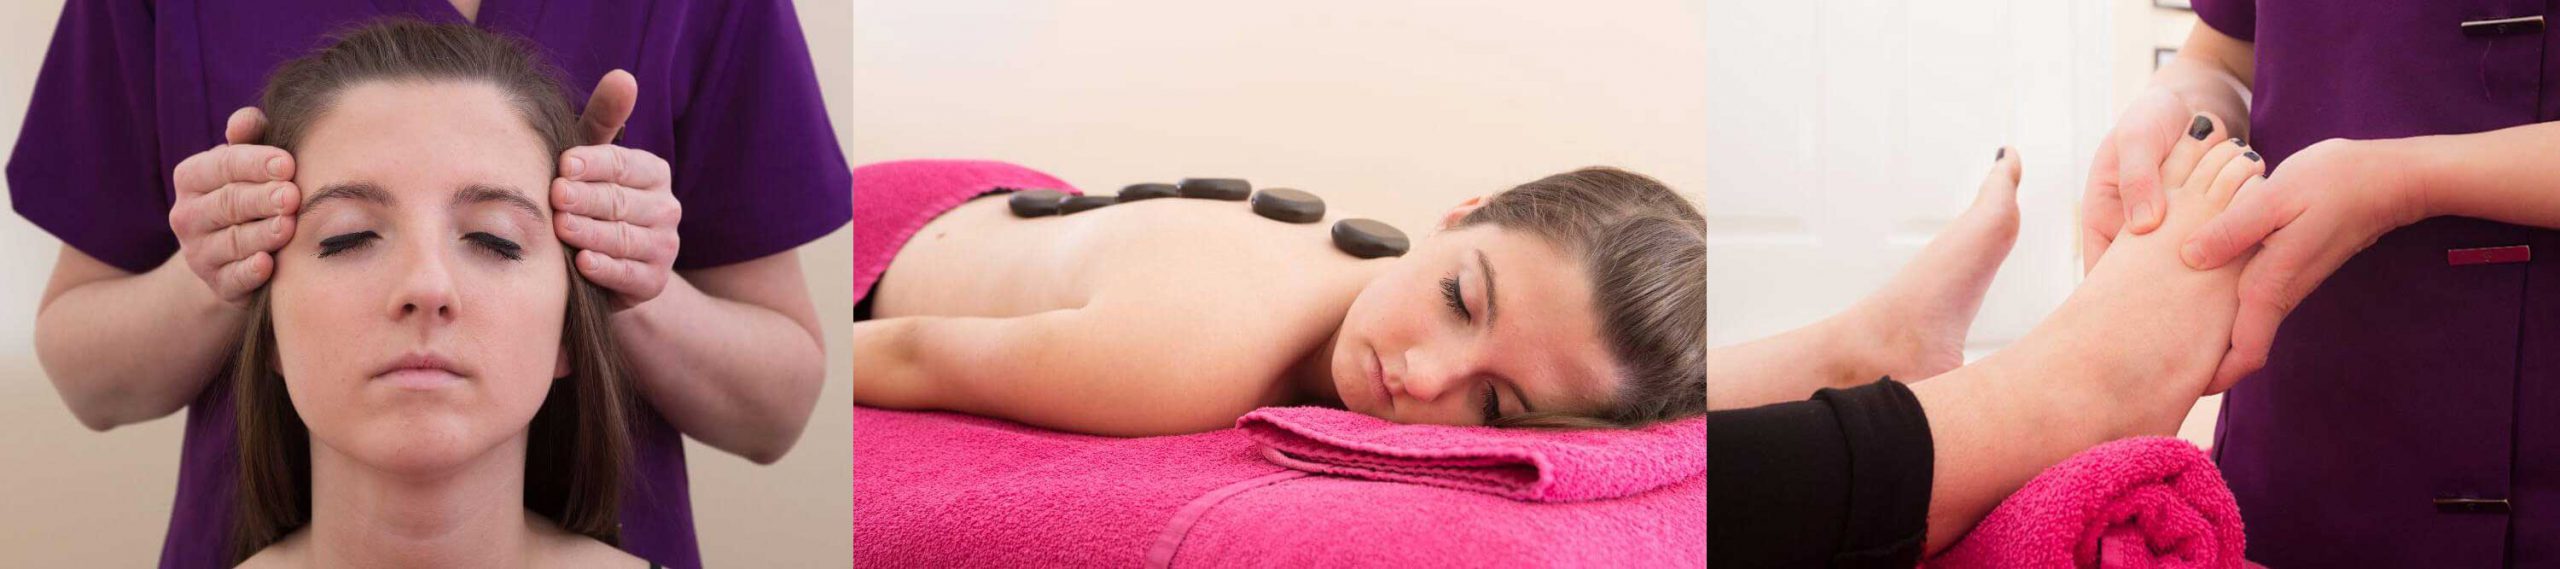 Treatments head massage, hot stone massage and reflexology